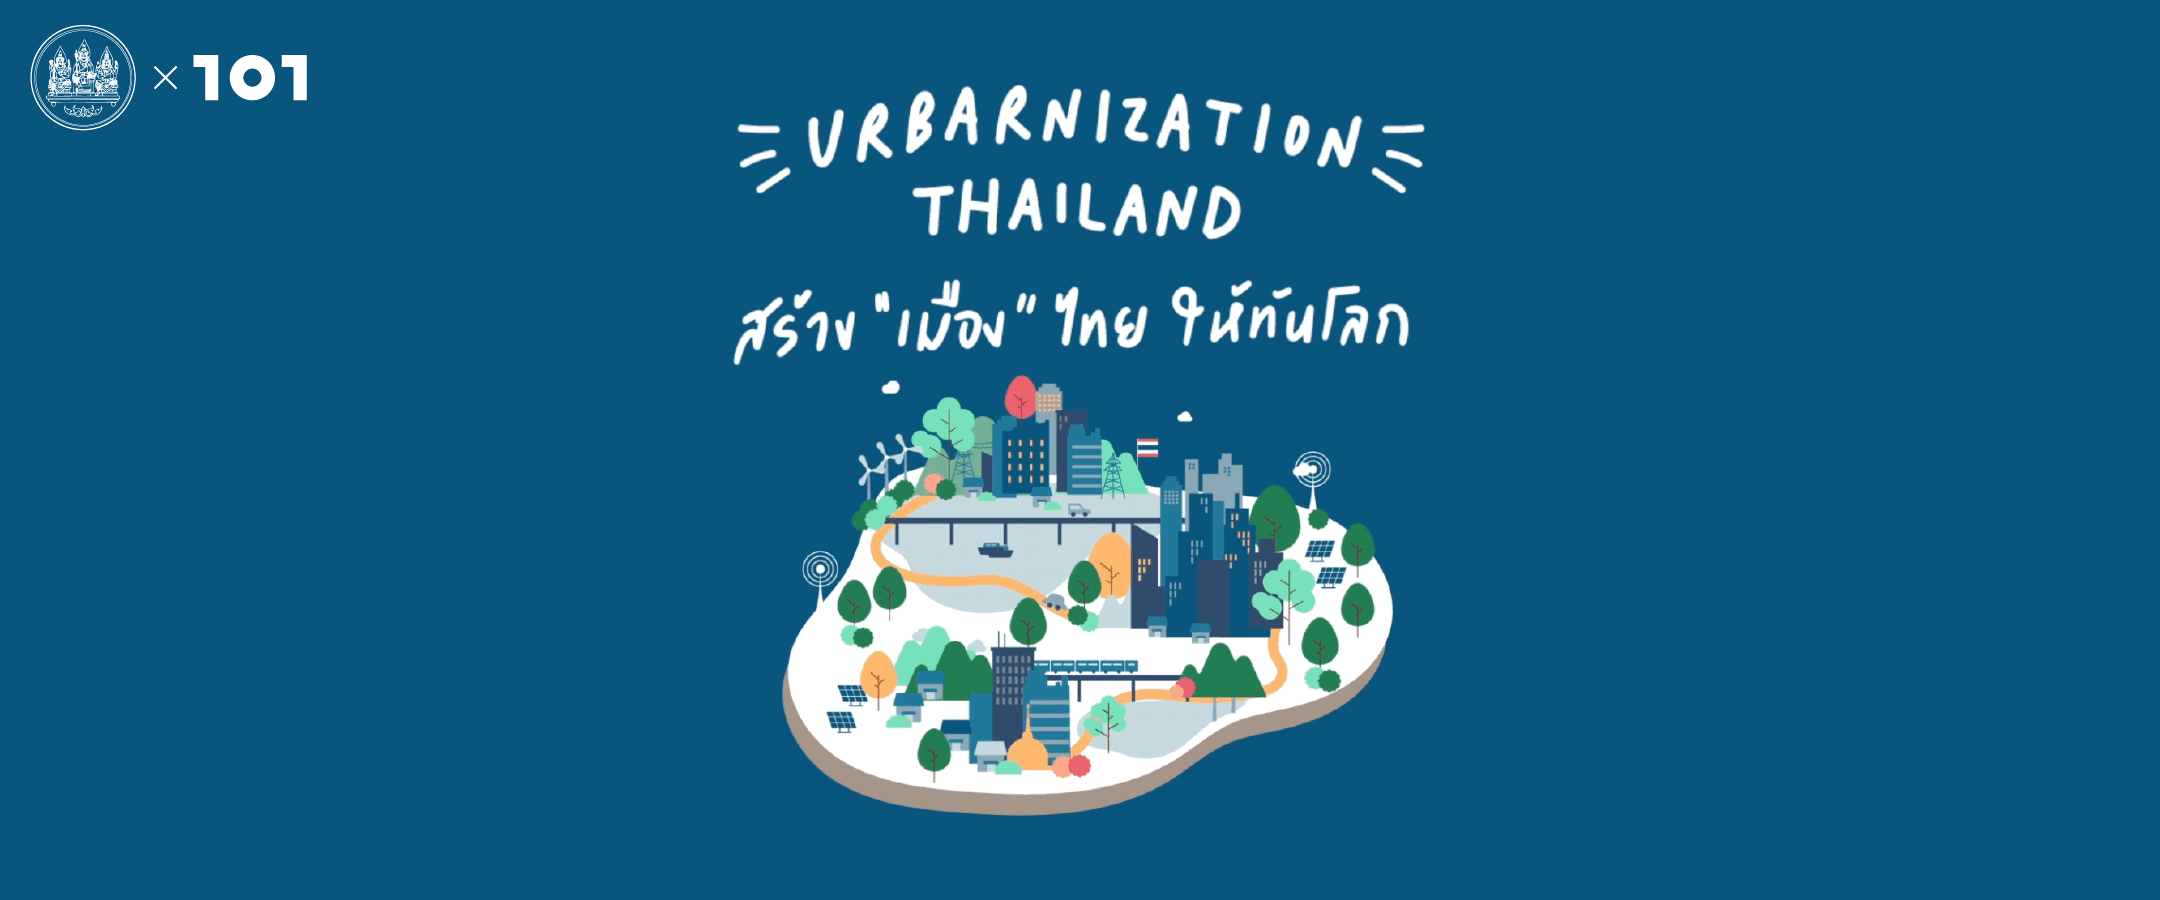 Urbanization Thailand สร้าง'เมือง'ไทย ให้ทันโลก